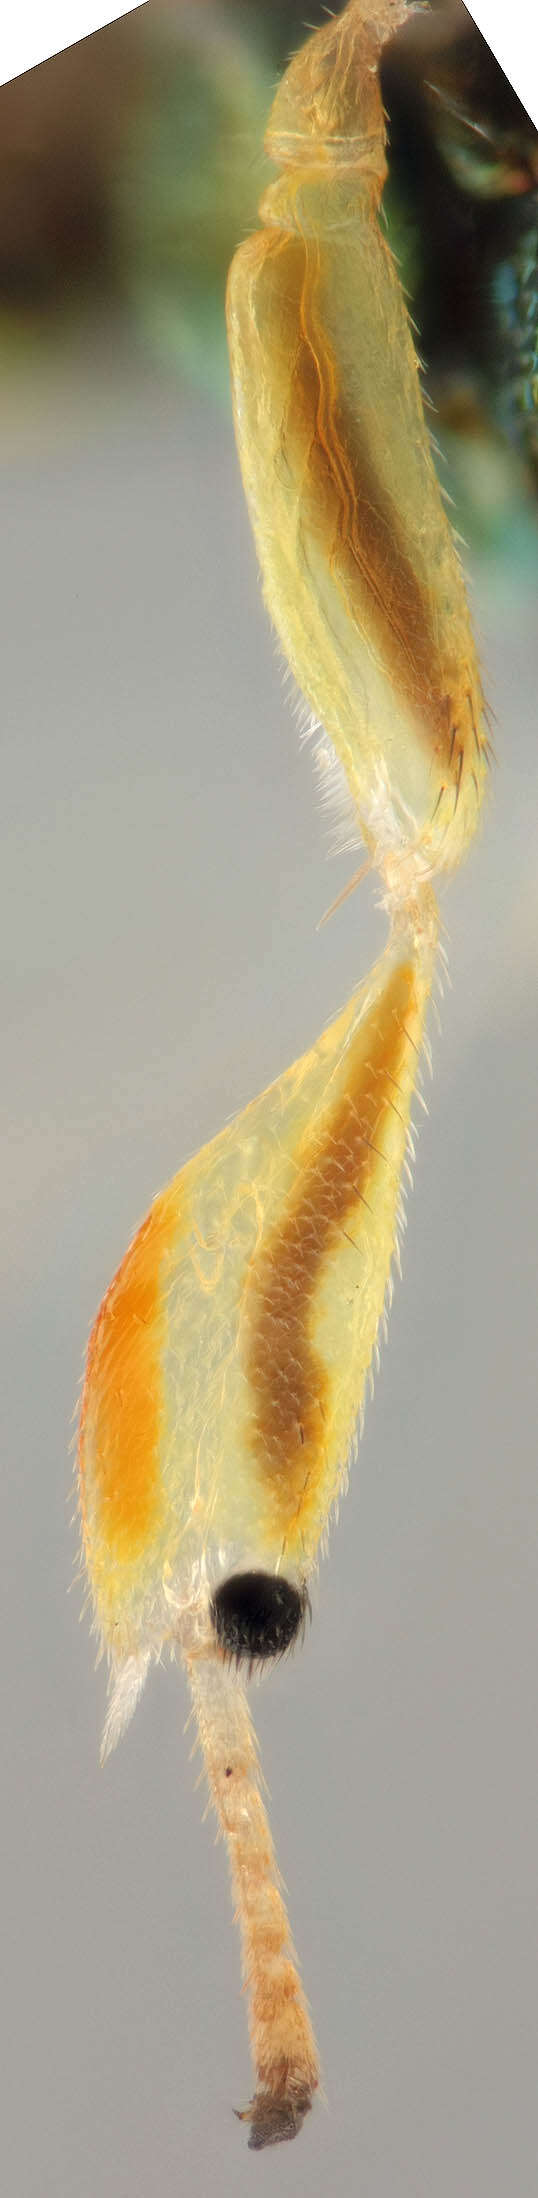 Image of Mesopolobus tibialis (Westwood 1833)